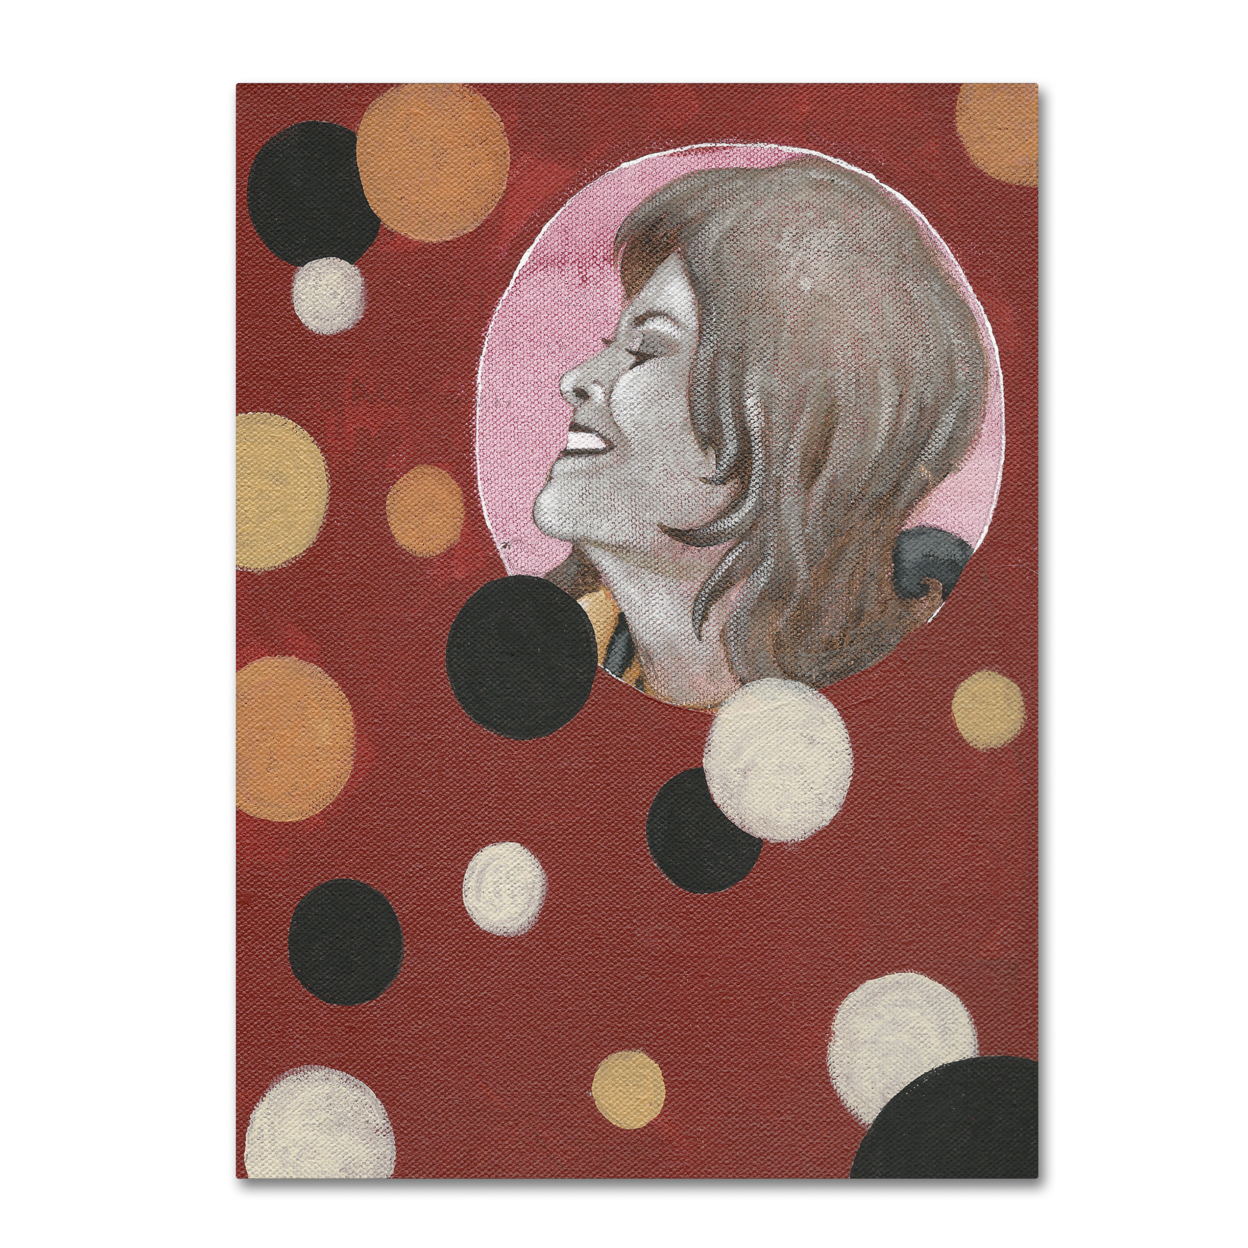 Craig Snodgrass 'Astro-Anna II' Canvas Wall Art 35 X 47 Inches